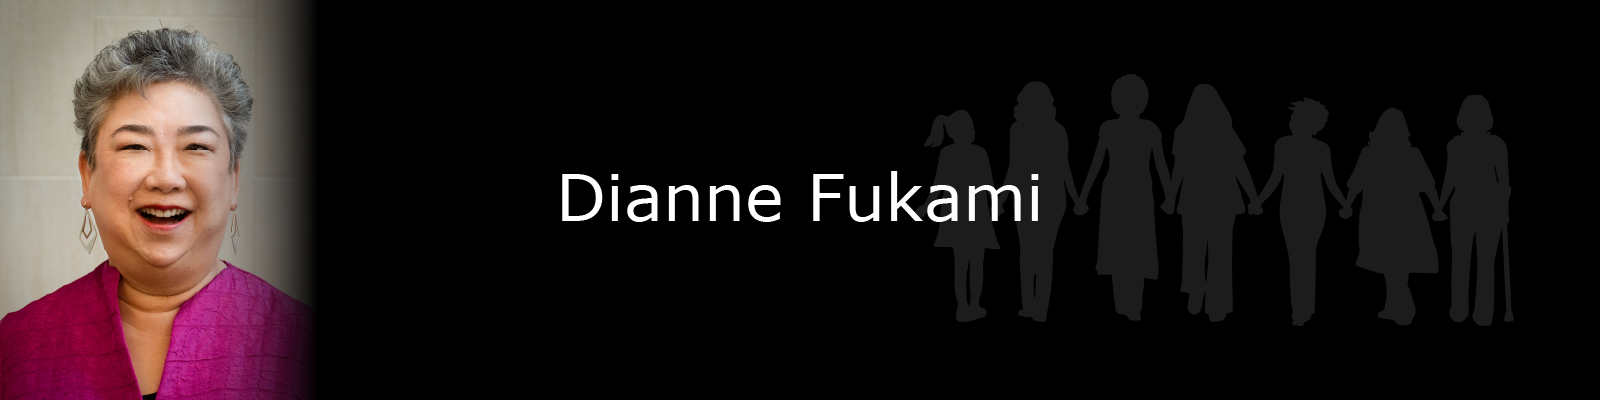 Photo of Dianne Fukami.